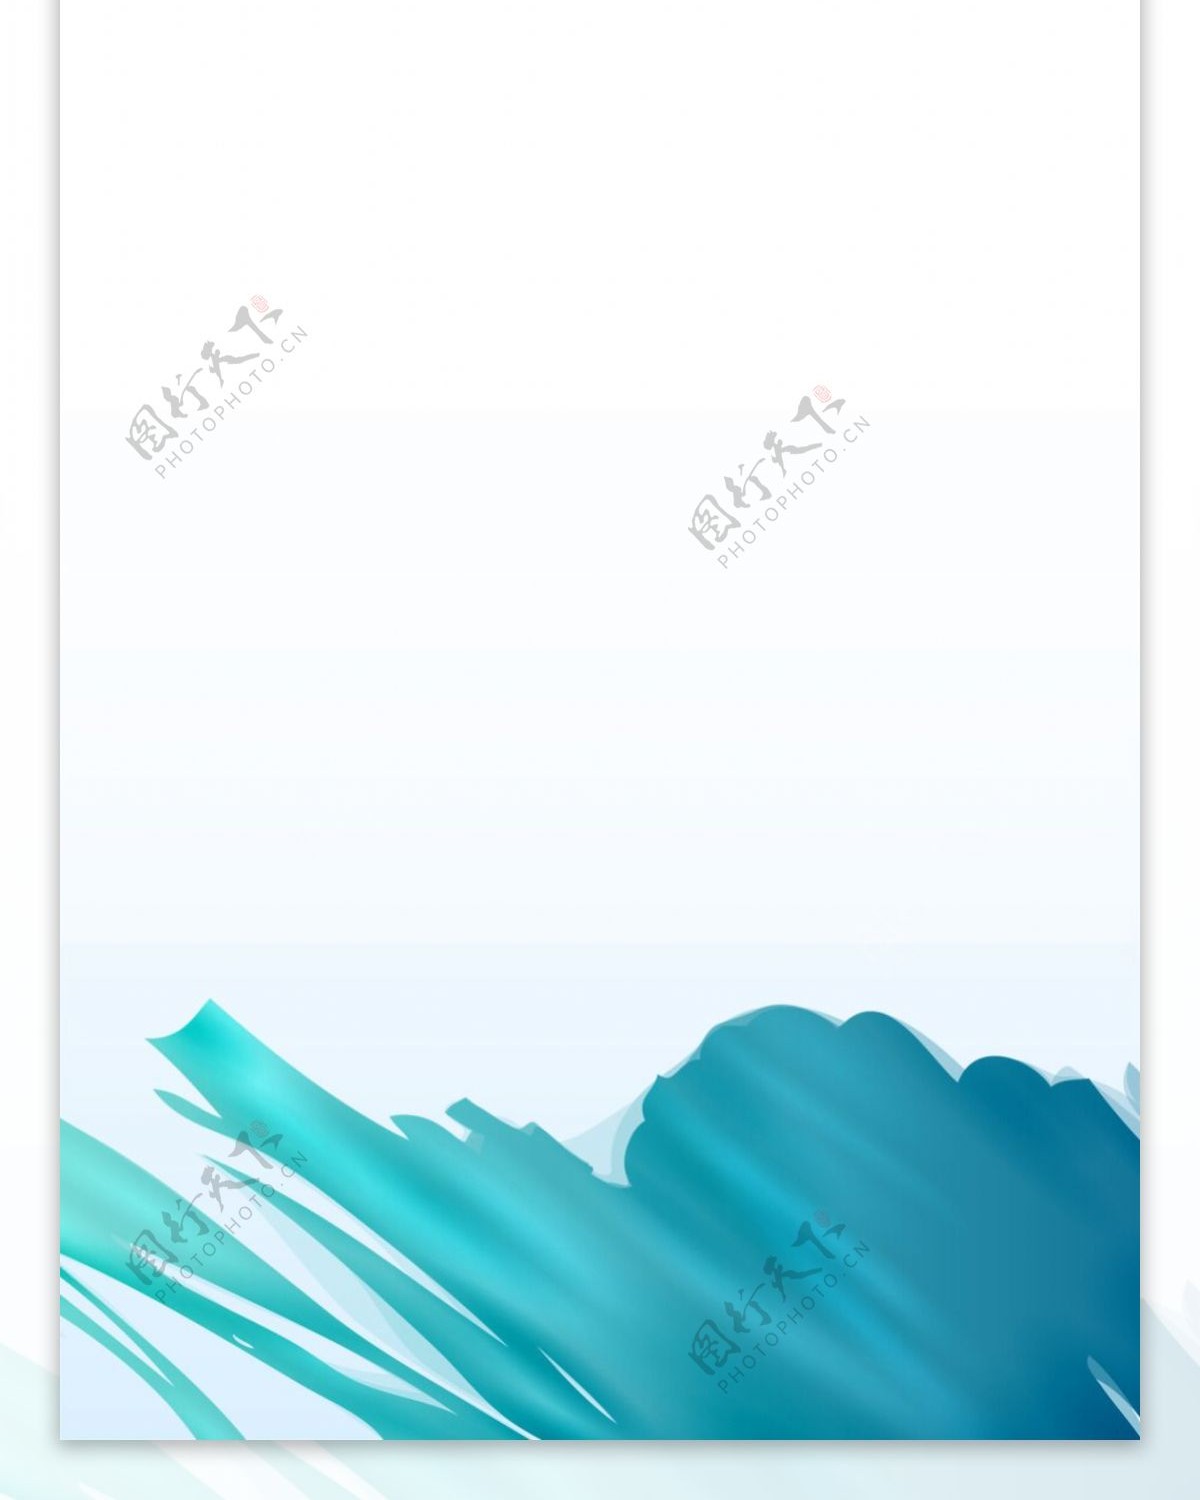 蓝色精美梦幻背景架设计模板素材海报画面